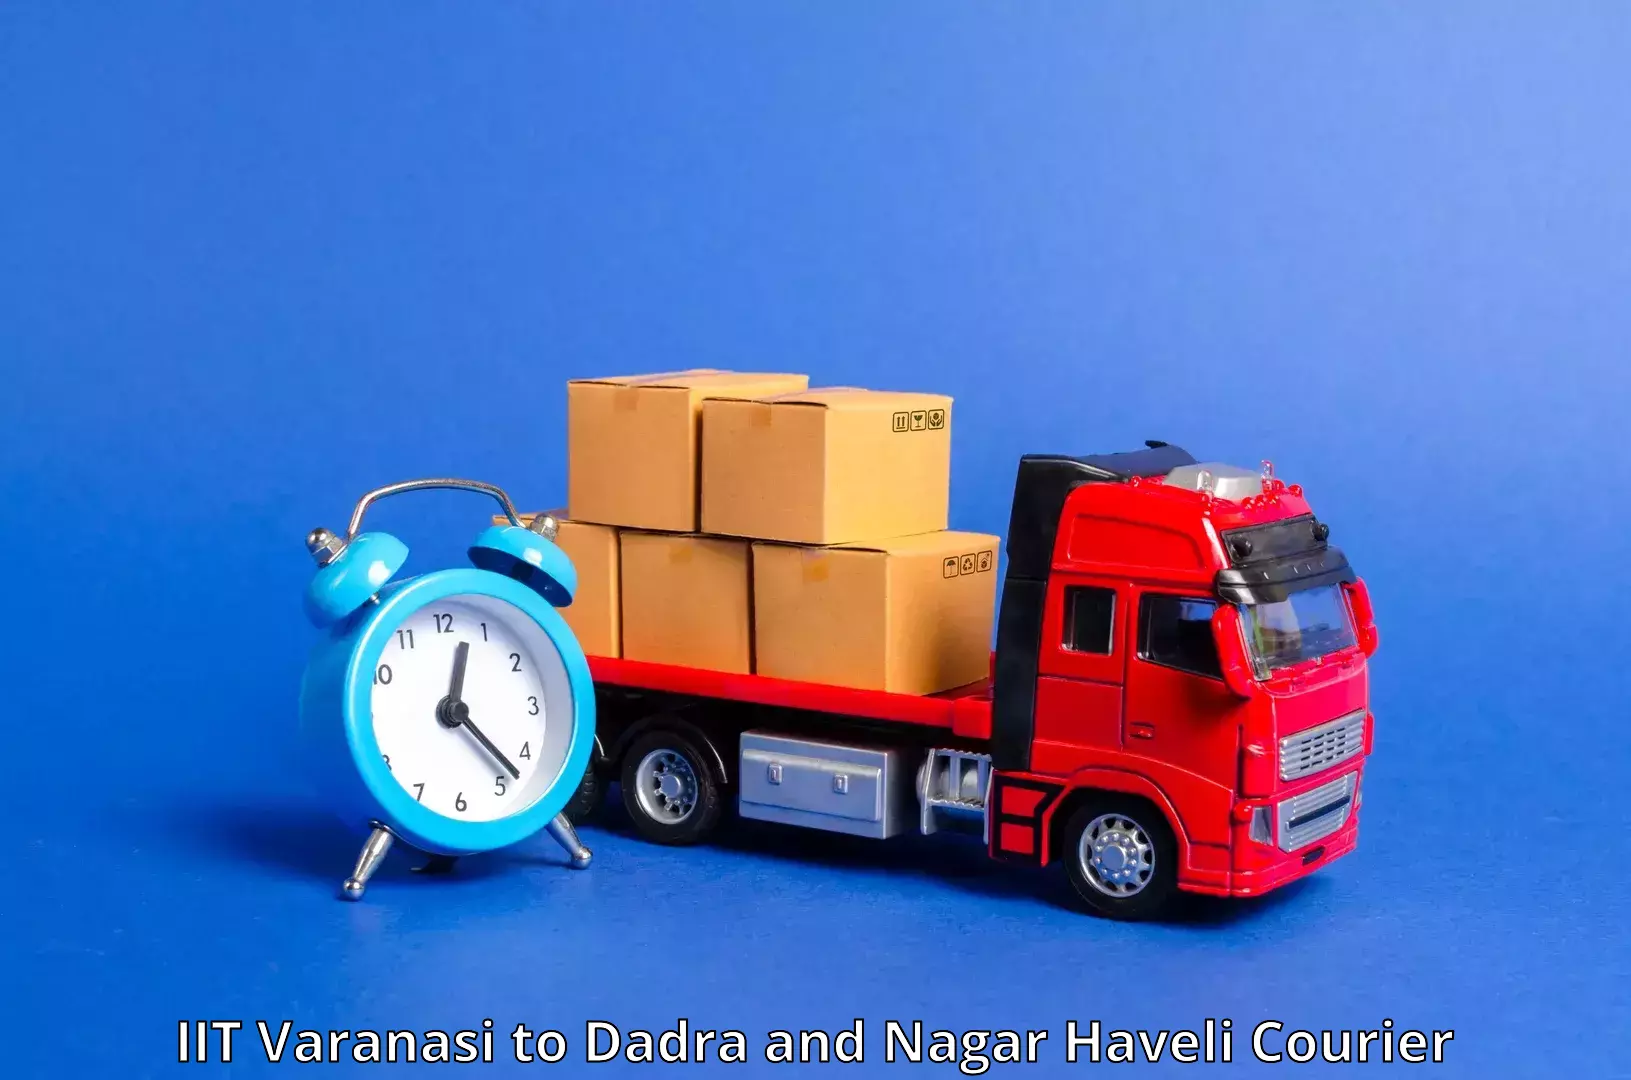 Weekend courier service IIT Varanasi to Silvassa